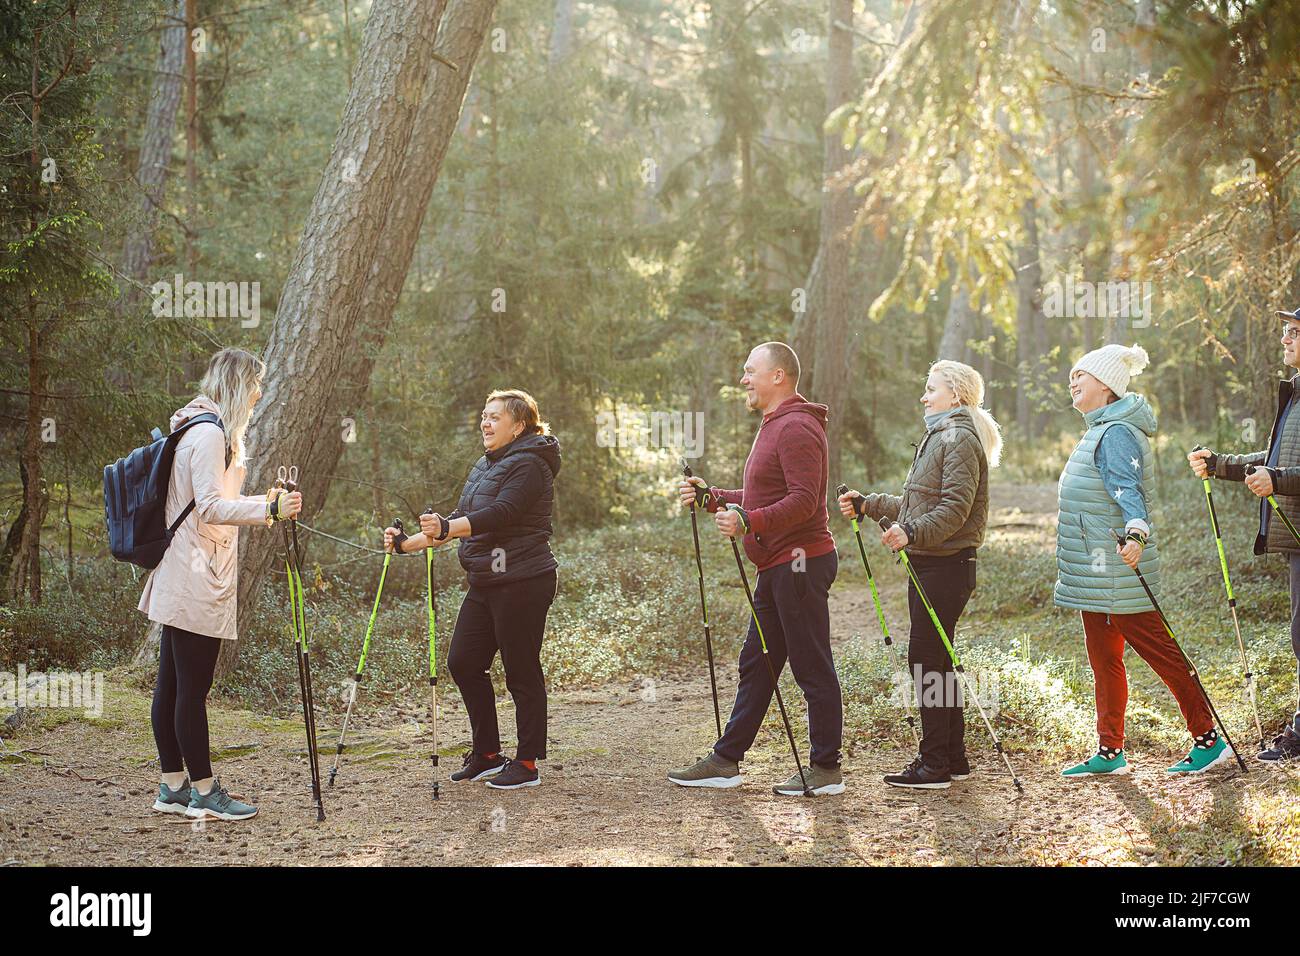 Femme blonde avec groupe de personnes enseigner le jogging scandinave, exercices de forme physique avec des bâtons dans les bois, expliquer les règles Banque D'Images